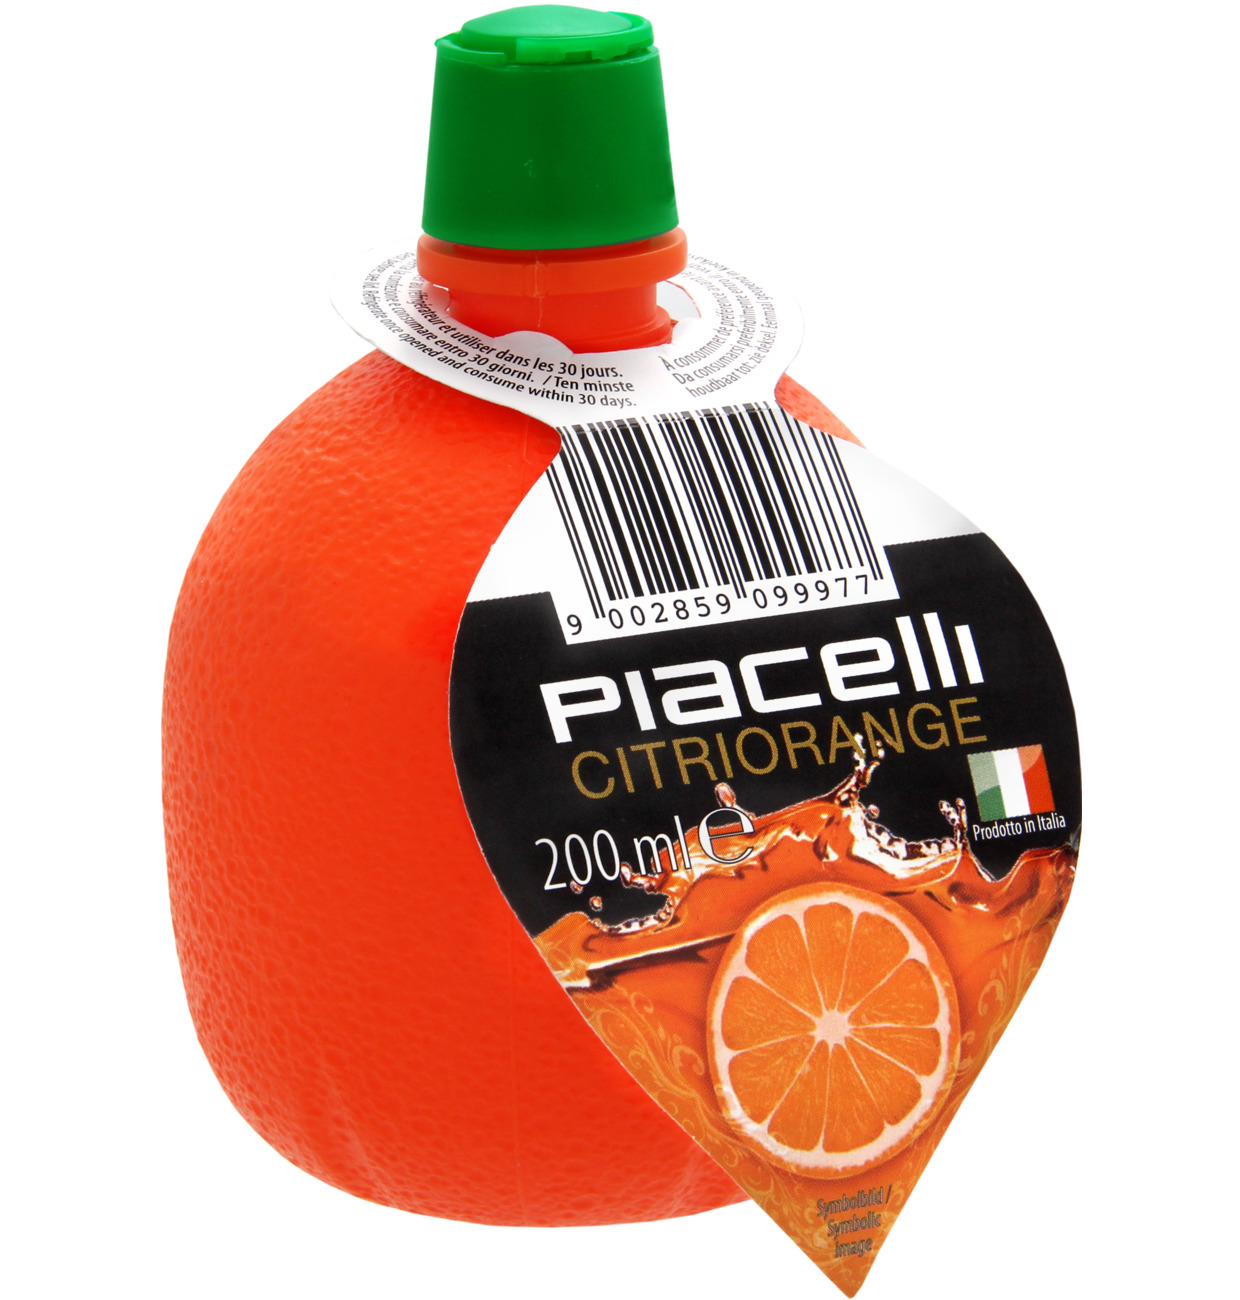 Piacelli Citriorange With Orange Juice Concentrate 200 ml
